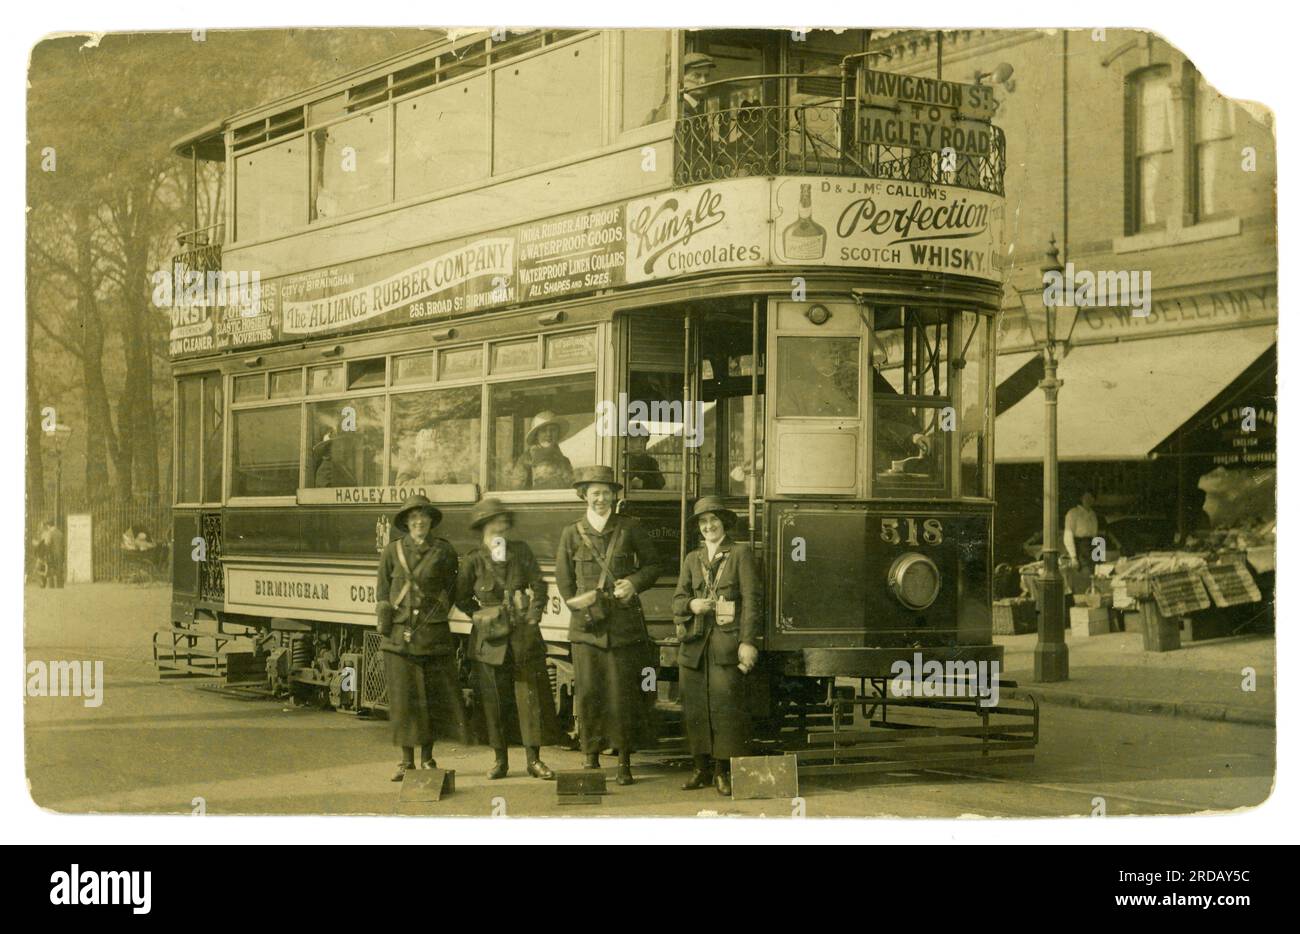 Carte postale originale de l'ère WW1 de femmes chefs de tramway, peut-être de nouvelles recrues, heureuses et souriantes, travaillant en tant que conductrices de tramway aidant à l'effort de guerre, sur le tramway Hagley Road, la ligne de tramway allait de navigation St à Hagley Rd. La carte postale a été postée de Smethwick (qui était sur la route du tramway) West Midlands, Birmingham, Staffordshire, Angleterre, Royaume-Uni. Exploité par Birmingham and Midland tramways Ltd. Publié / daté 23 Oct 1915 Banque D'Images